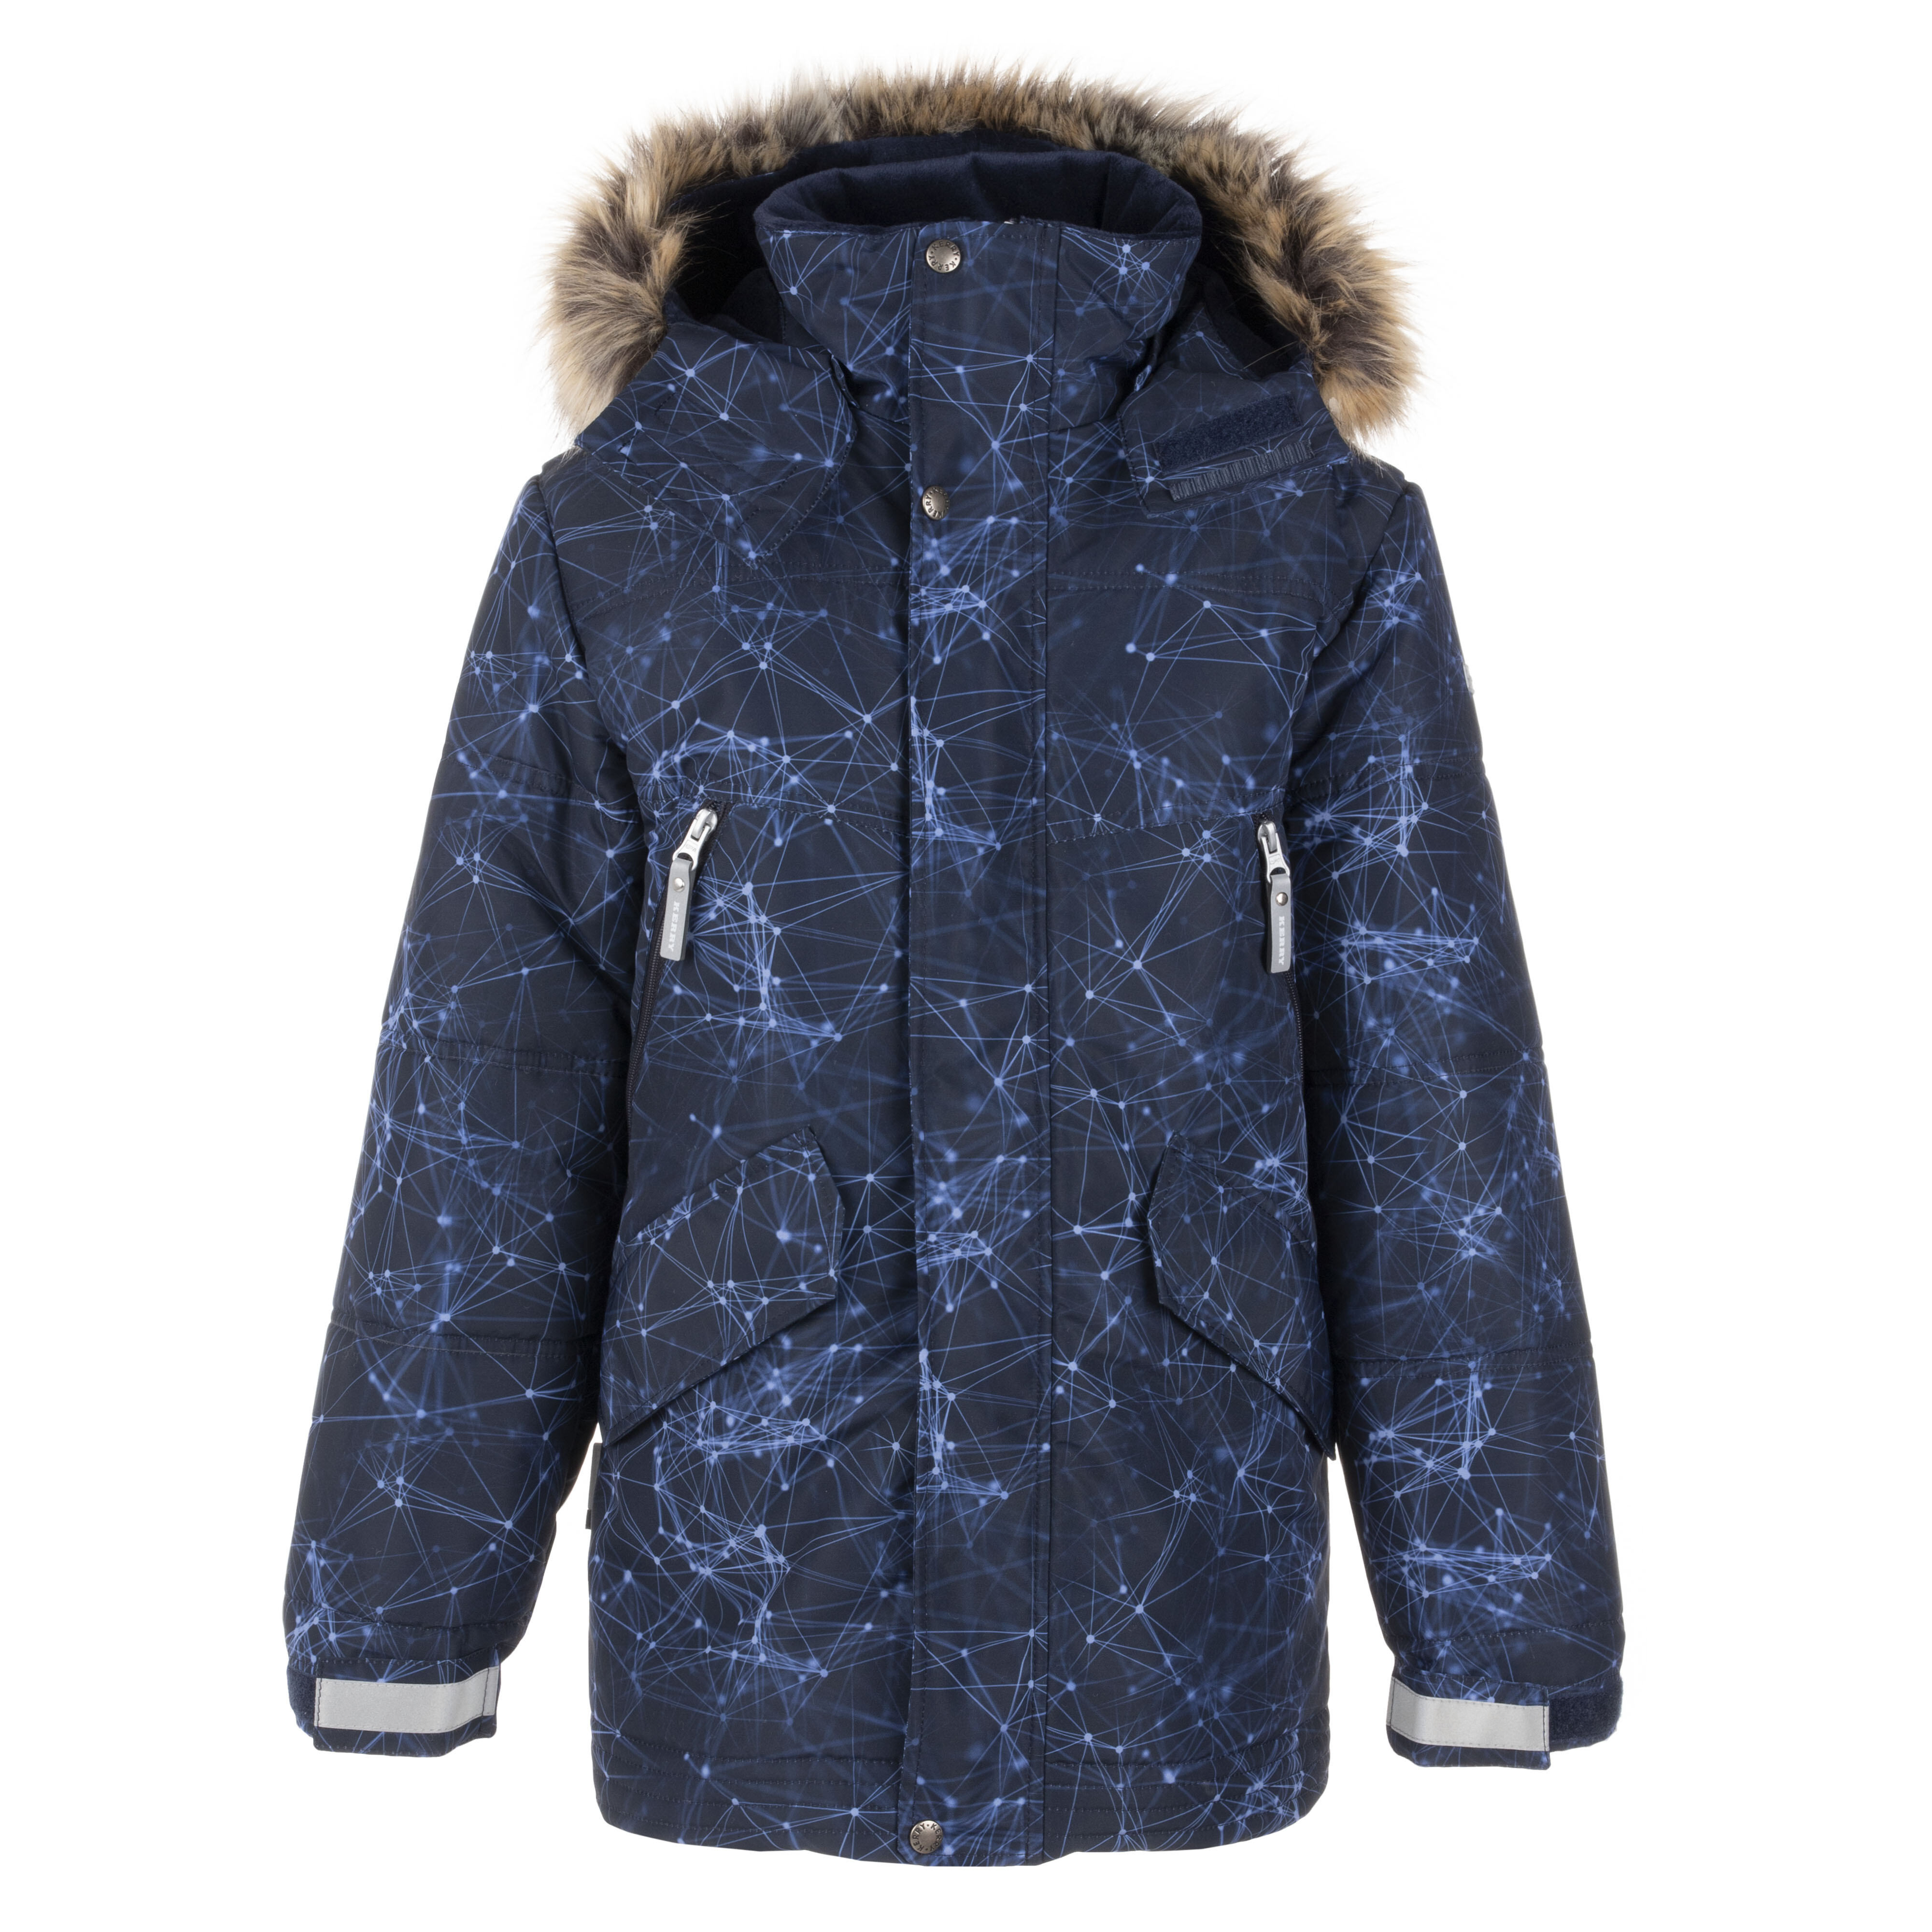 Купить Куртка Kerry SHAUR K21467 W/2295 цв. синий р. 158,